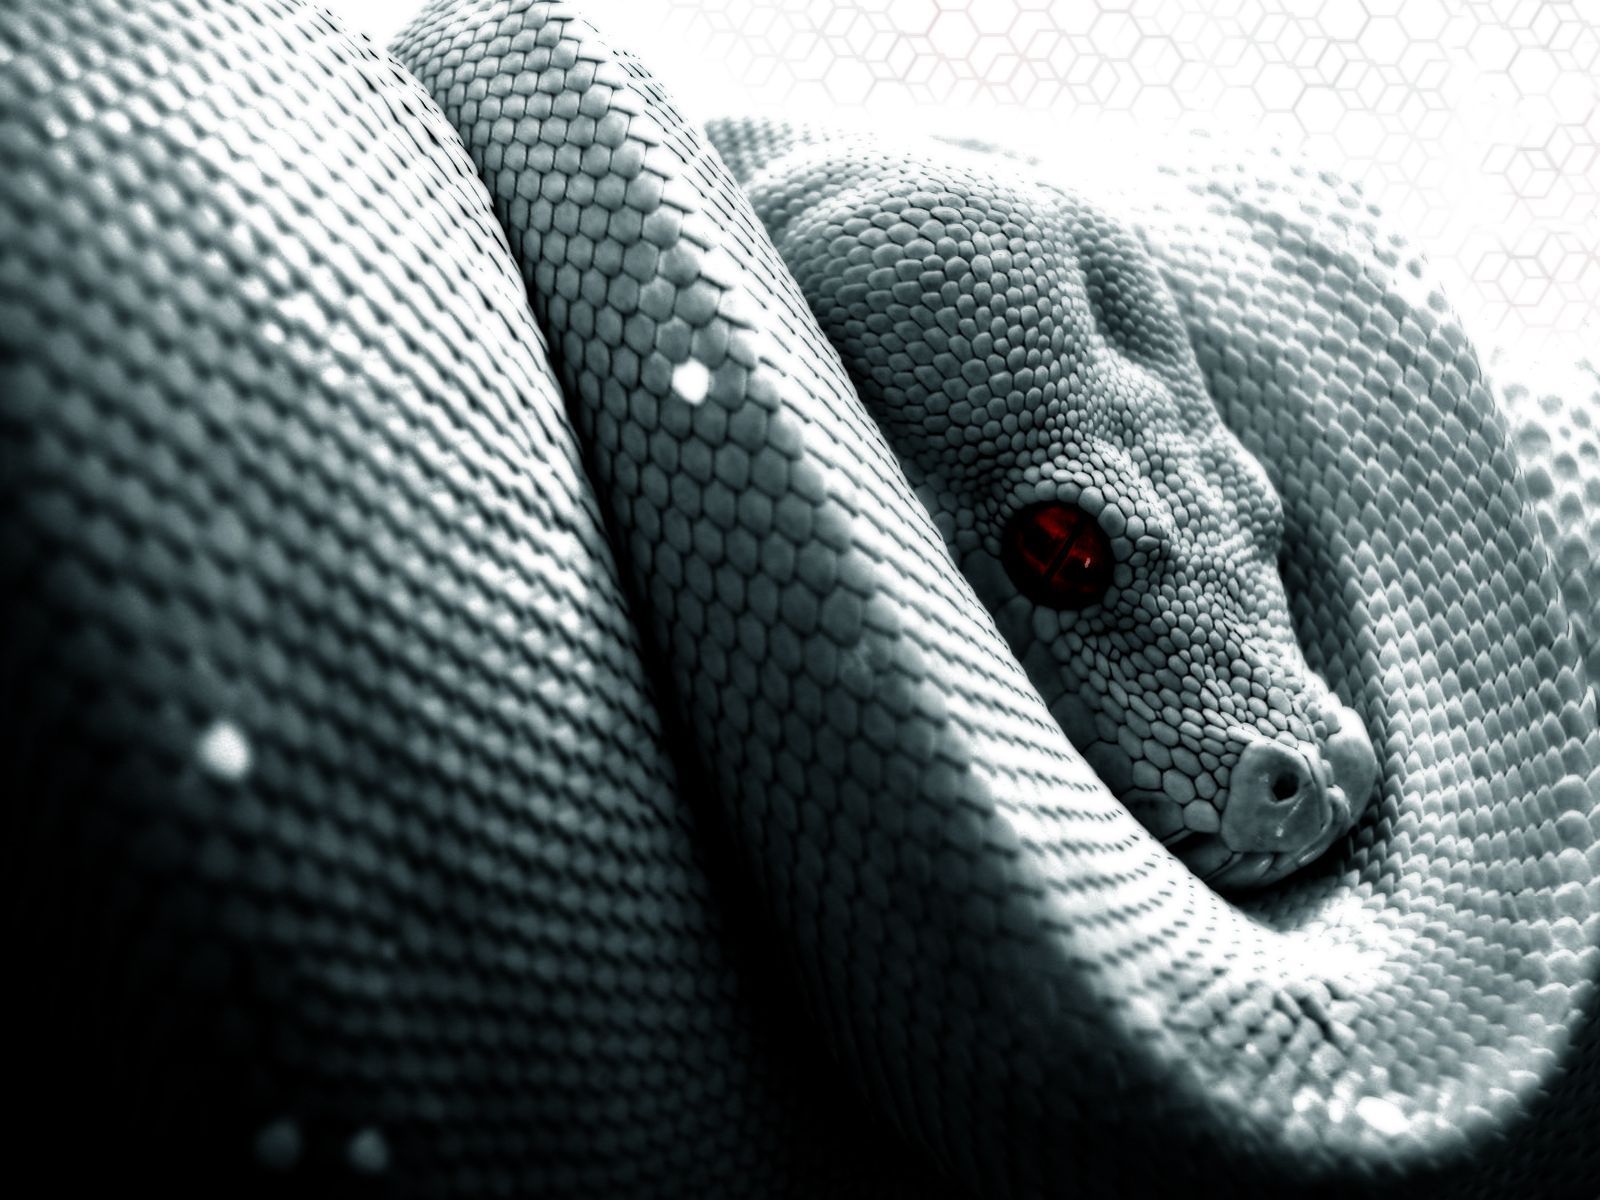 Snake wallpaper image by The Vampire on Snakes. Snake art, Snake